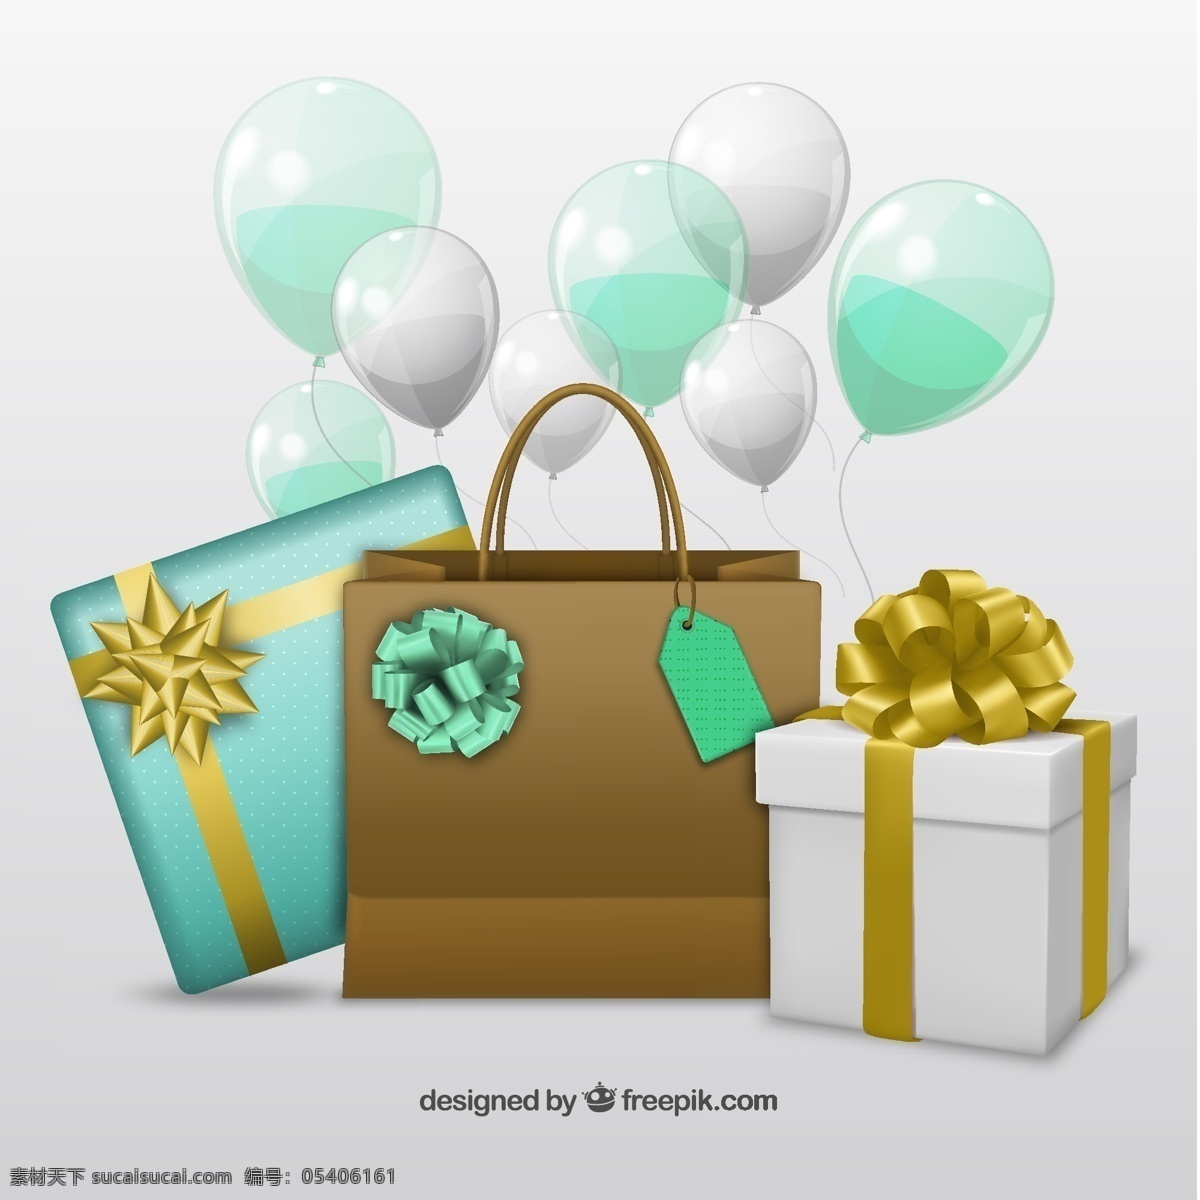 生日礼物 生日 聚会 装盒 礼品 装袋 庆典 目前 气球 庆祝 礼物 图标 高清 源文件